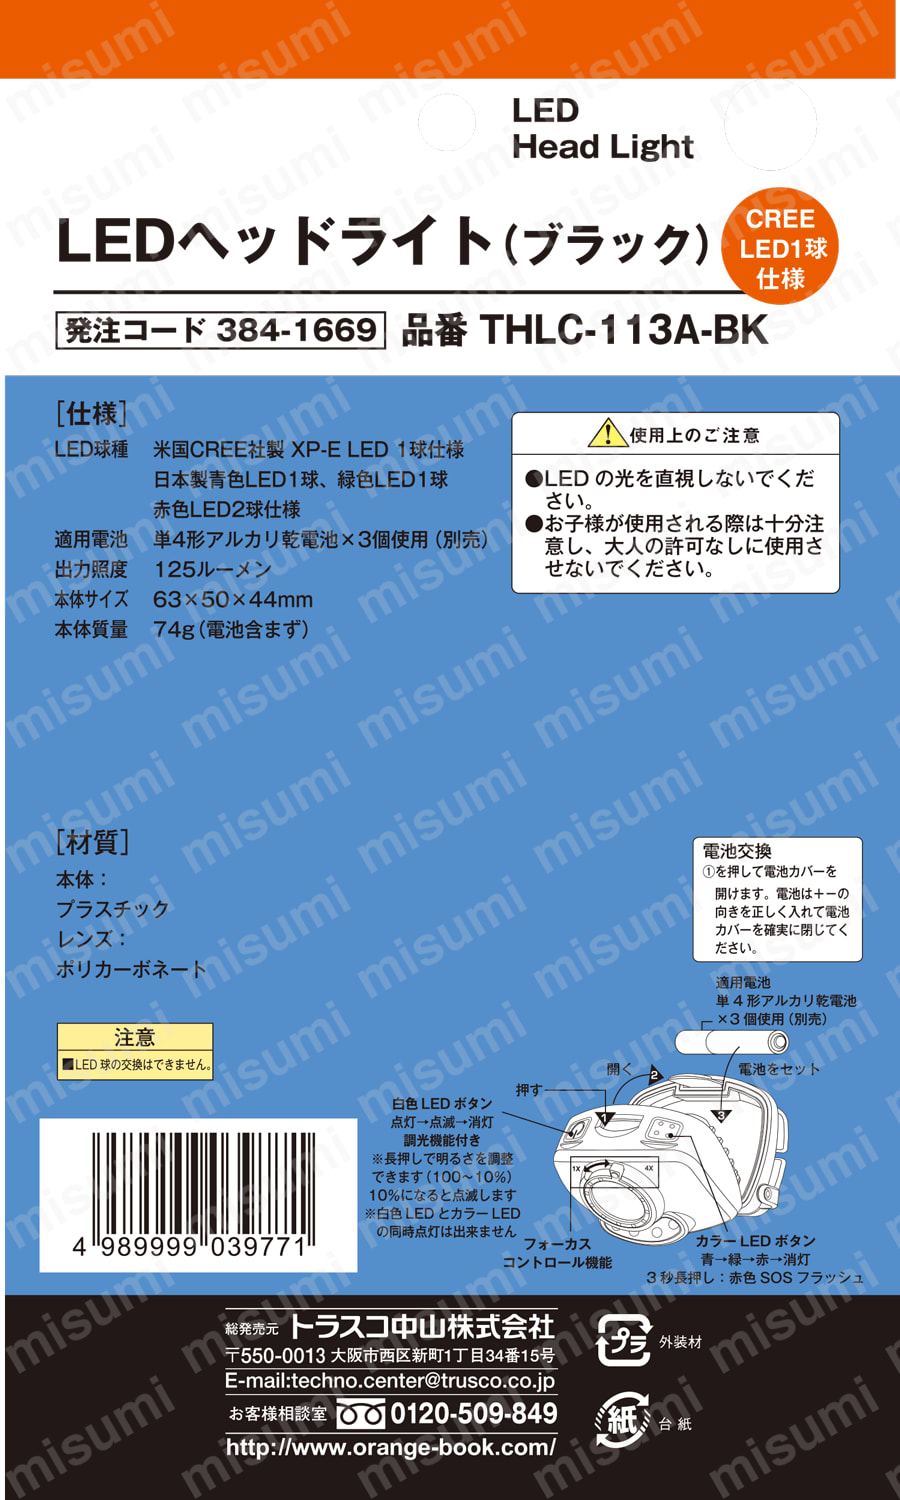 LEDヘッドライト THLC-113A-BK トラスコ中山 MISUMI(ミスミ)